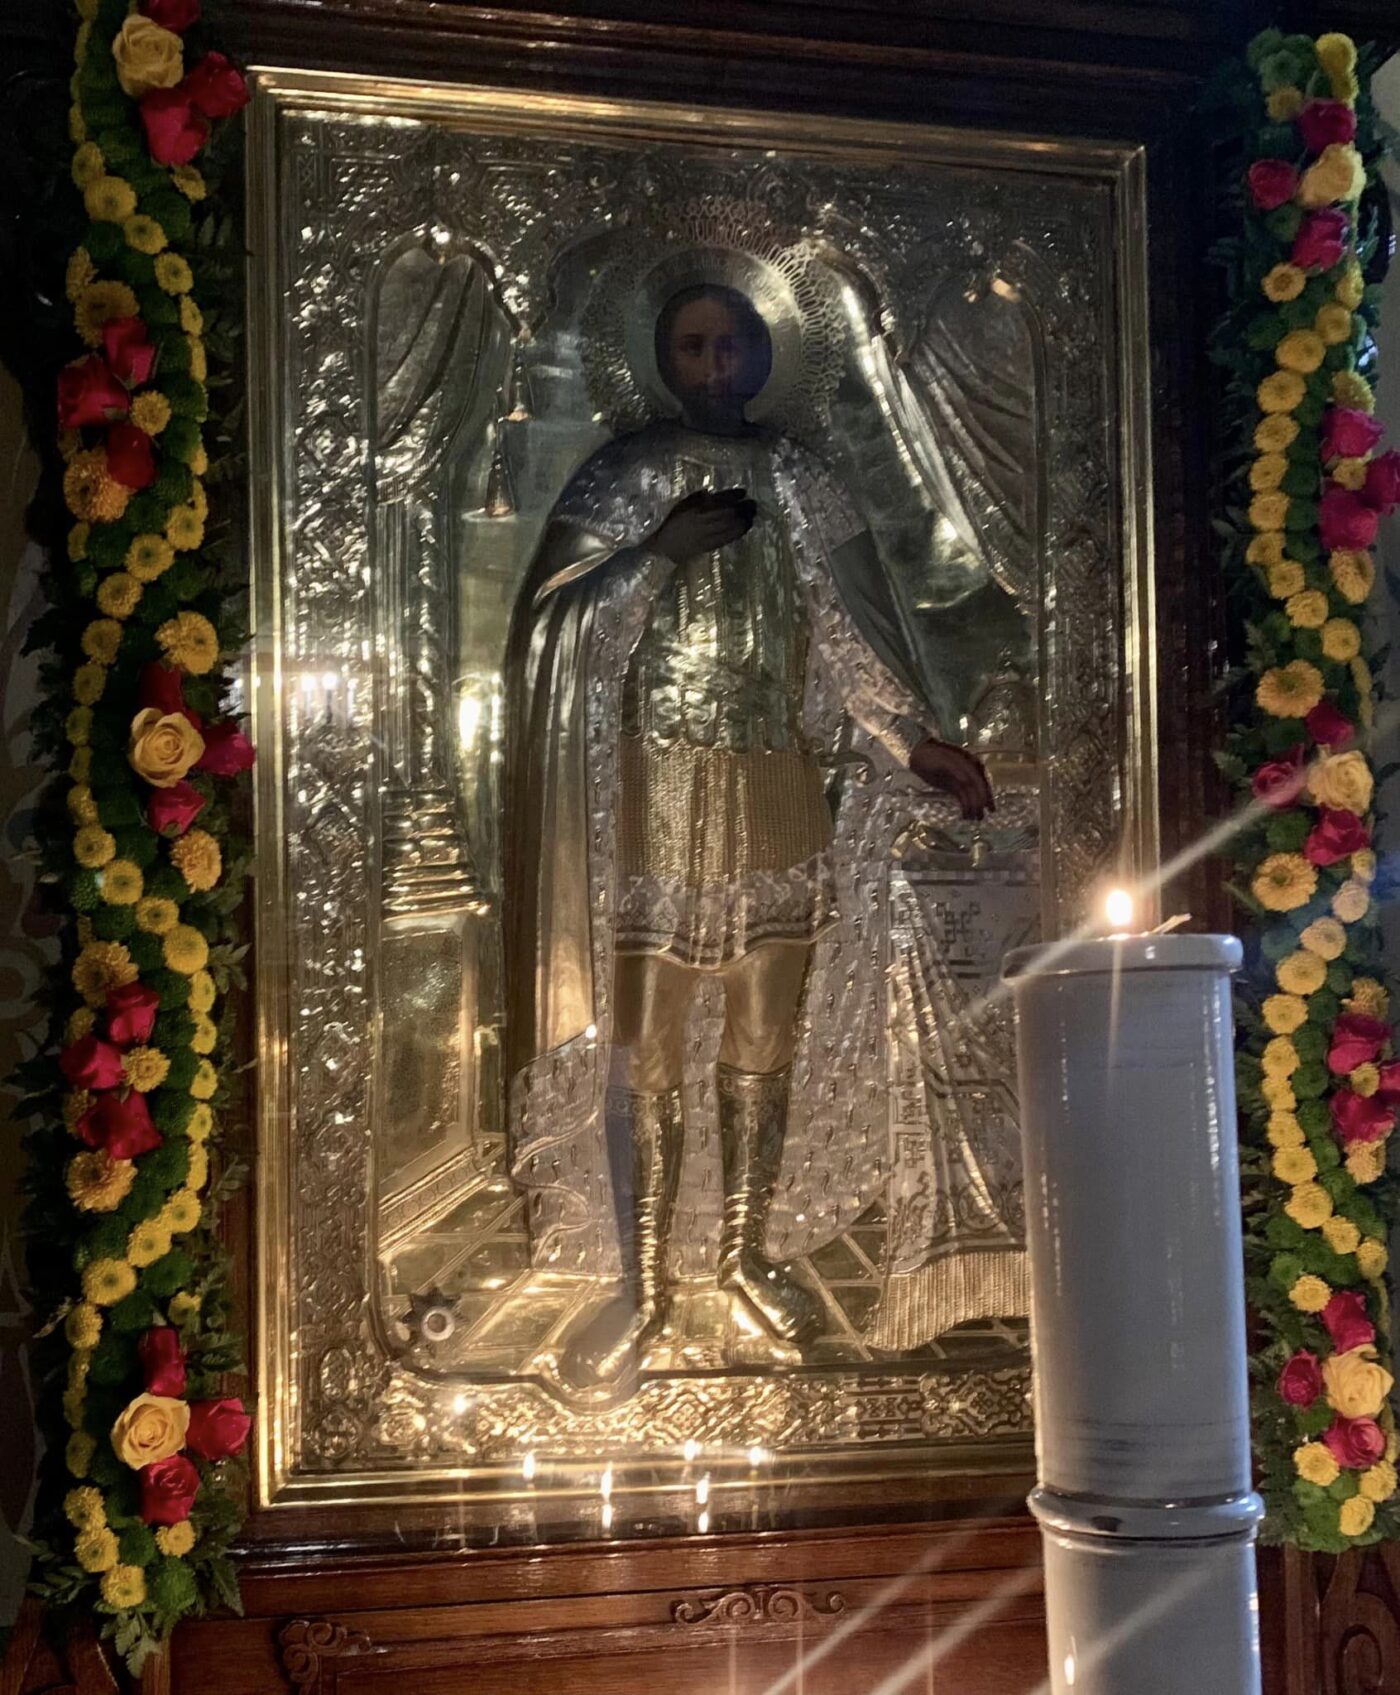 Икона святого благоверного князя Александра Невского